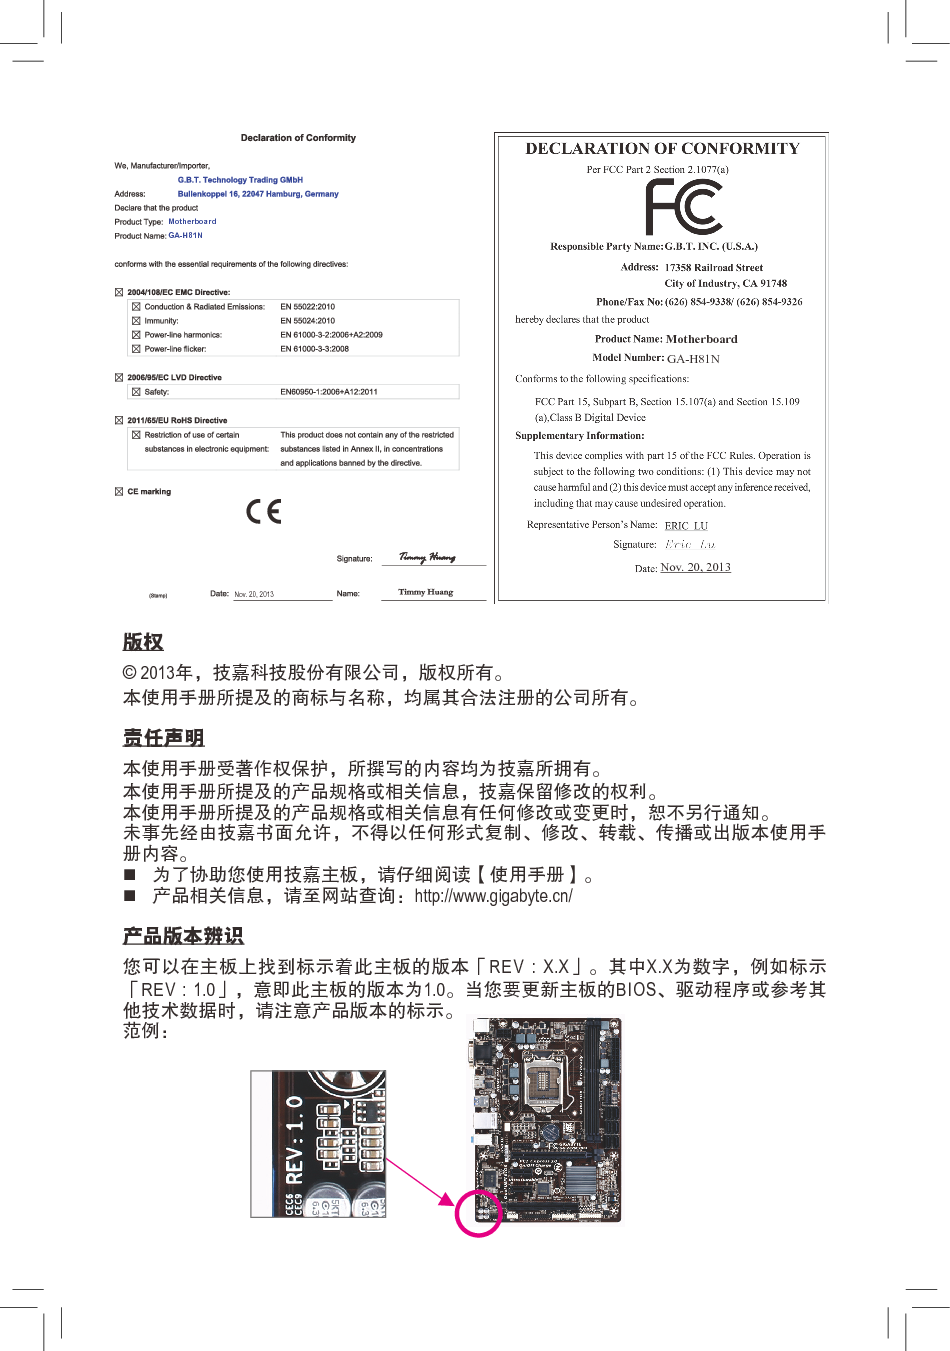 技嘉 Gigabyte GA-H81N 使用手册 第1页